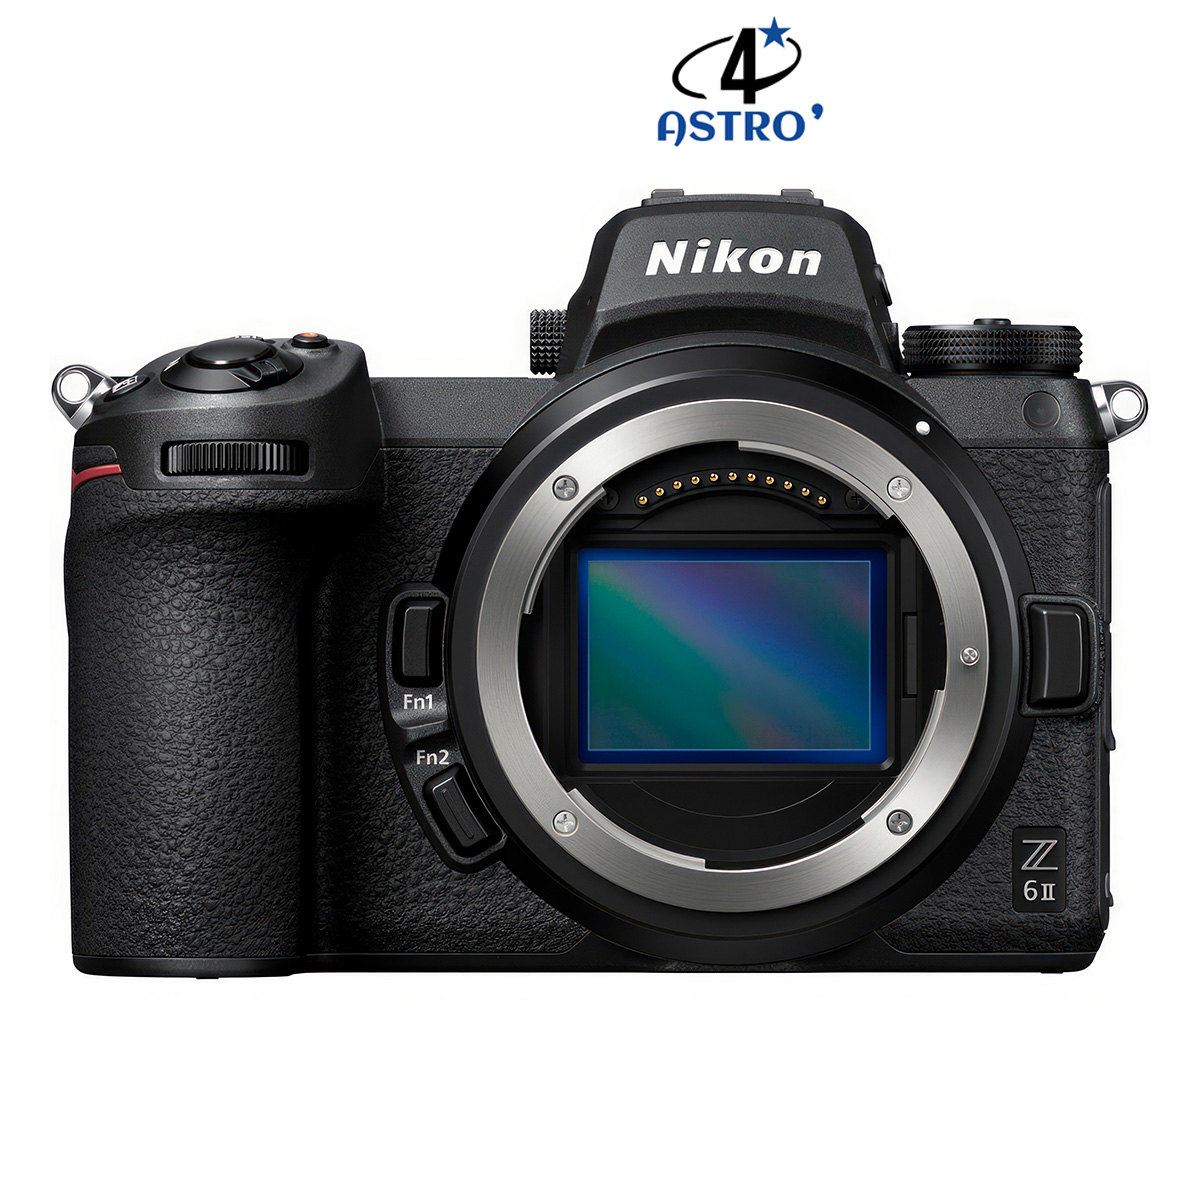 Hybride Nikon Z6II neuf défiltré + refiltré 4'Astro